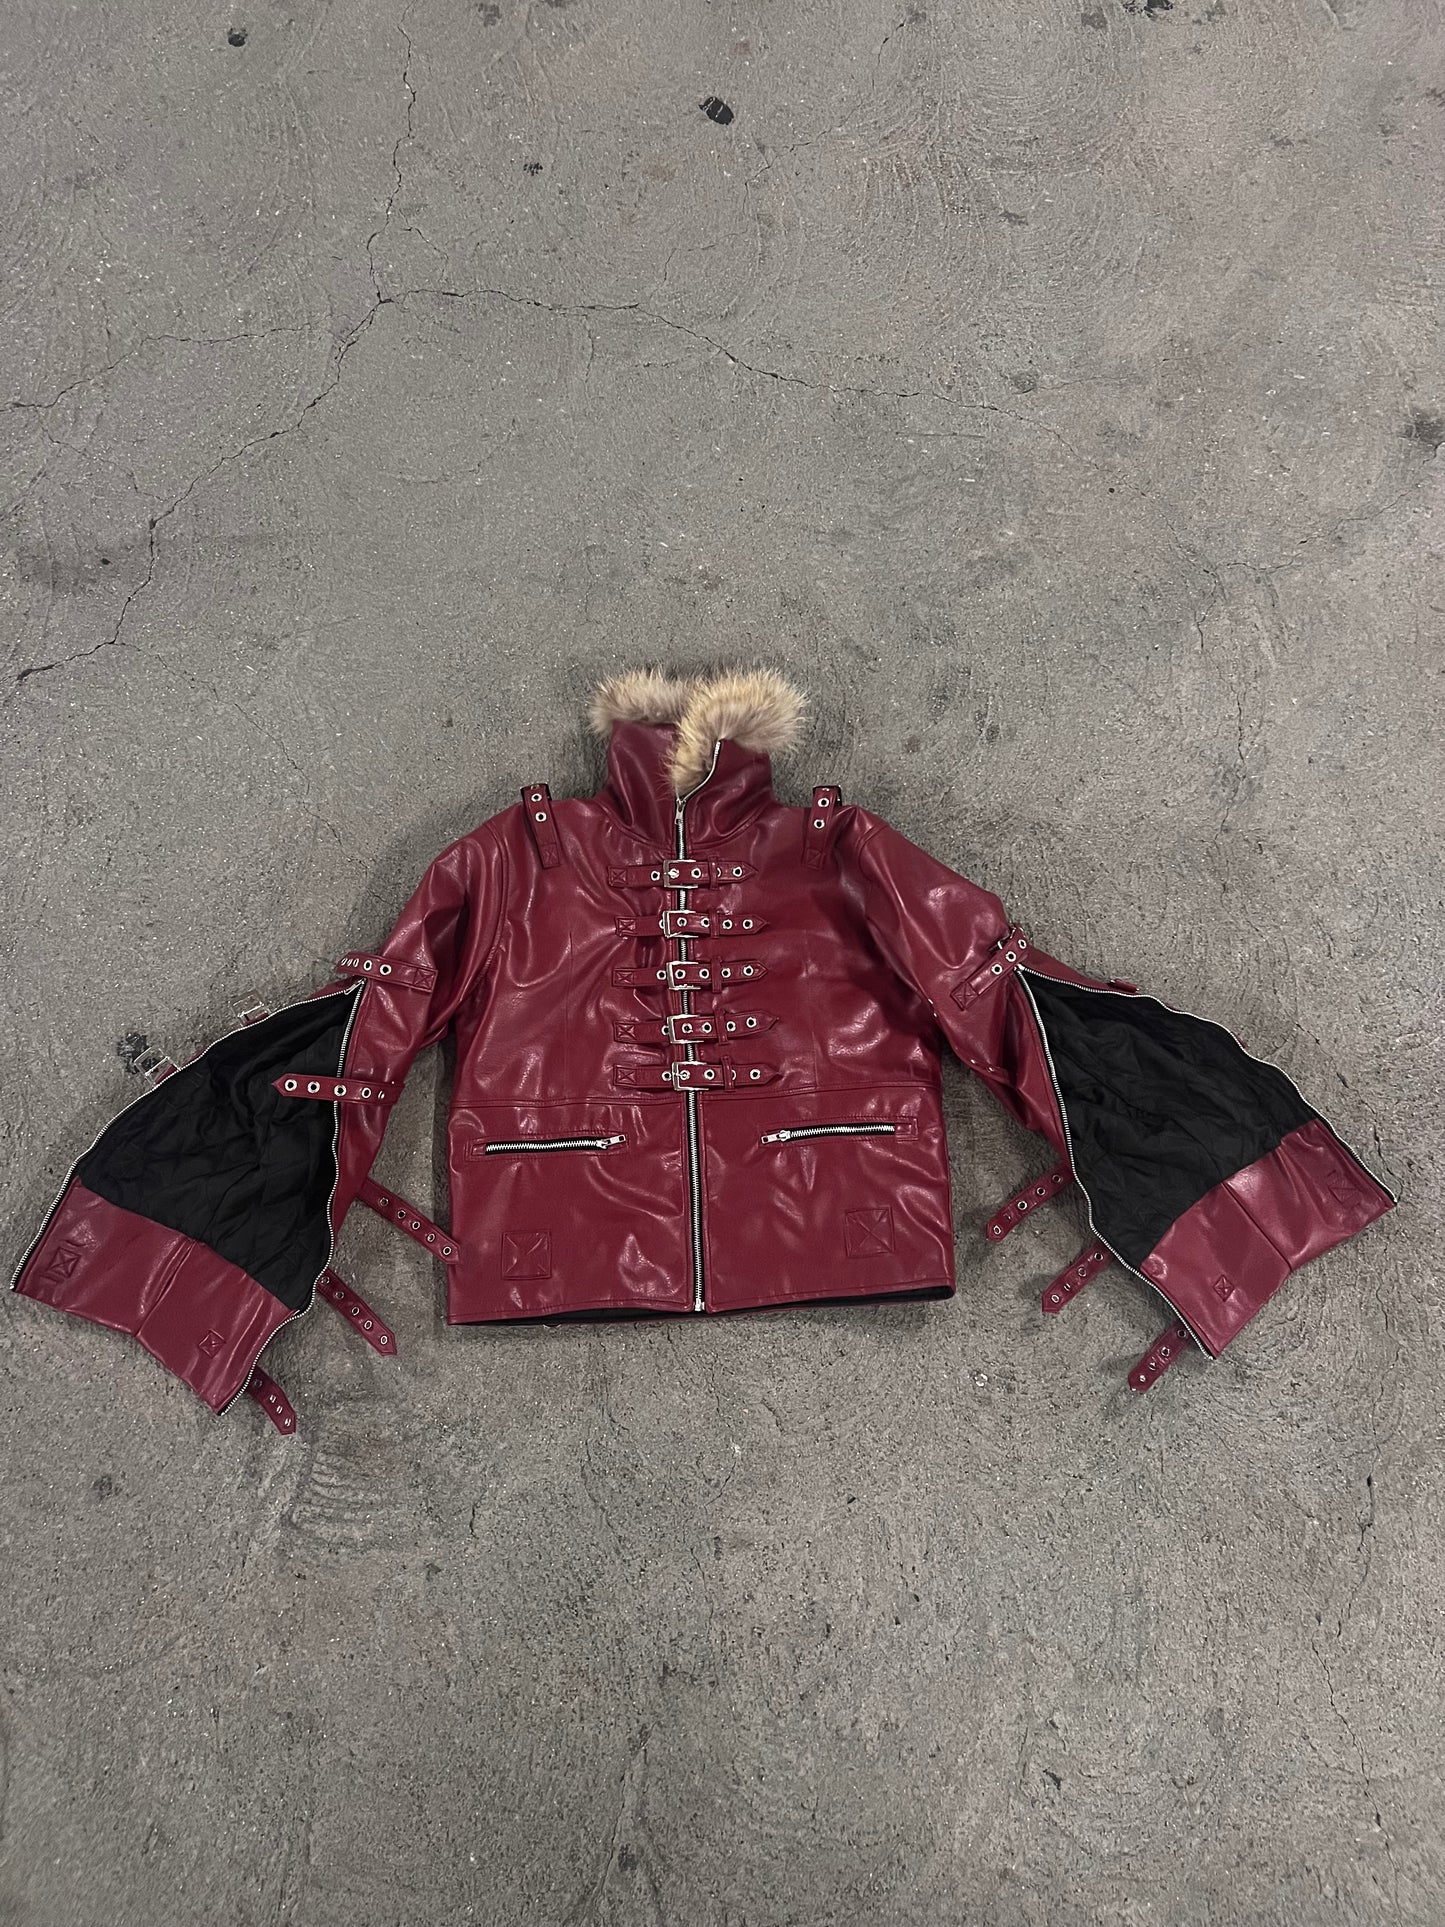 "Subjection" Bondage Leather Jacket